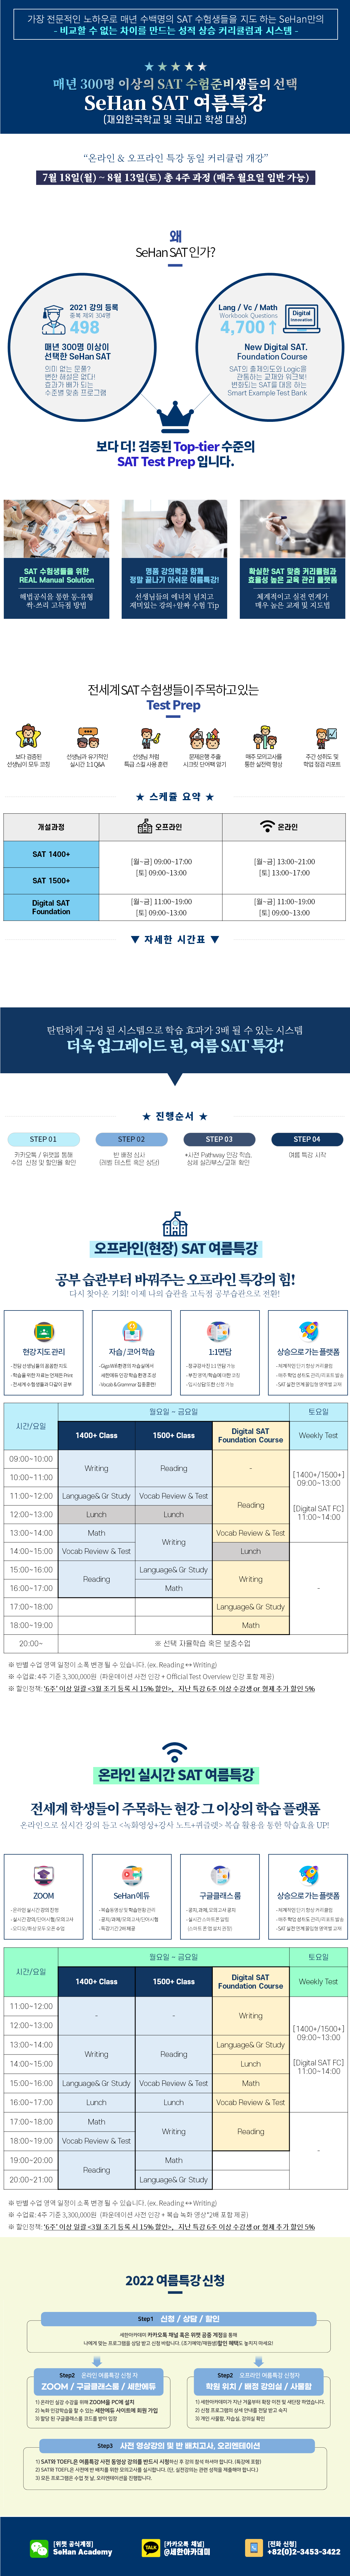 2022 재외한국학교/국내고 한국학교 대상 여름특강 SAT 내용 및 시간표